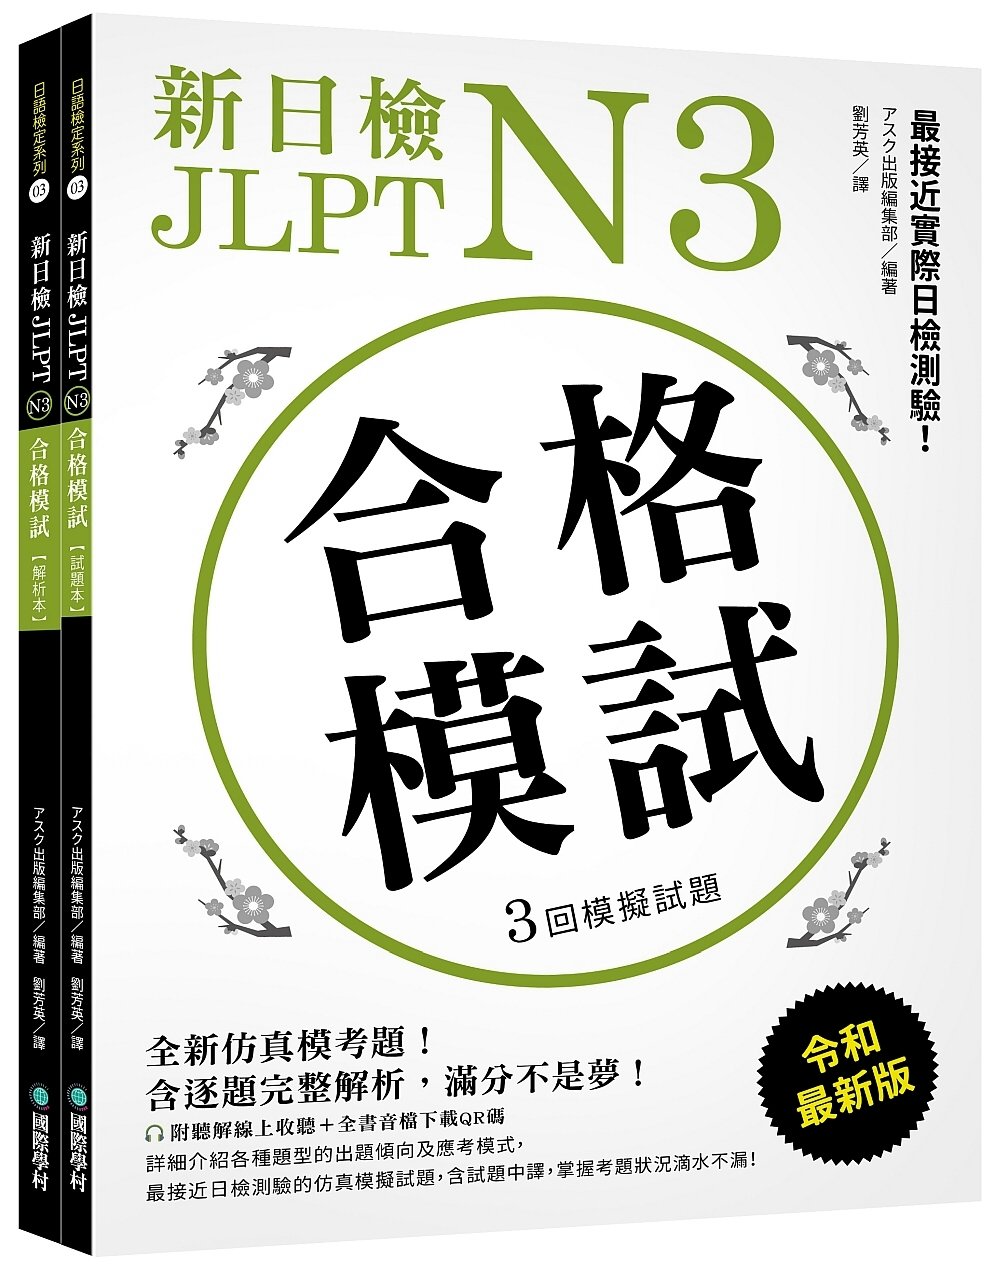 新日檢 JLPT N3 合格模試：全新仿真模考題，含逐題完整...